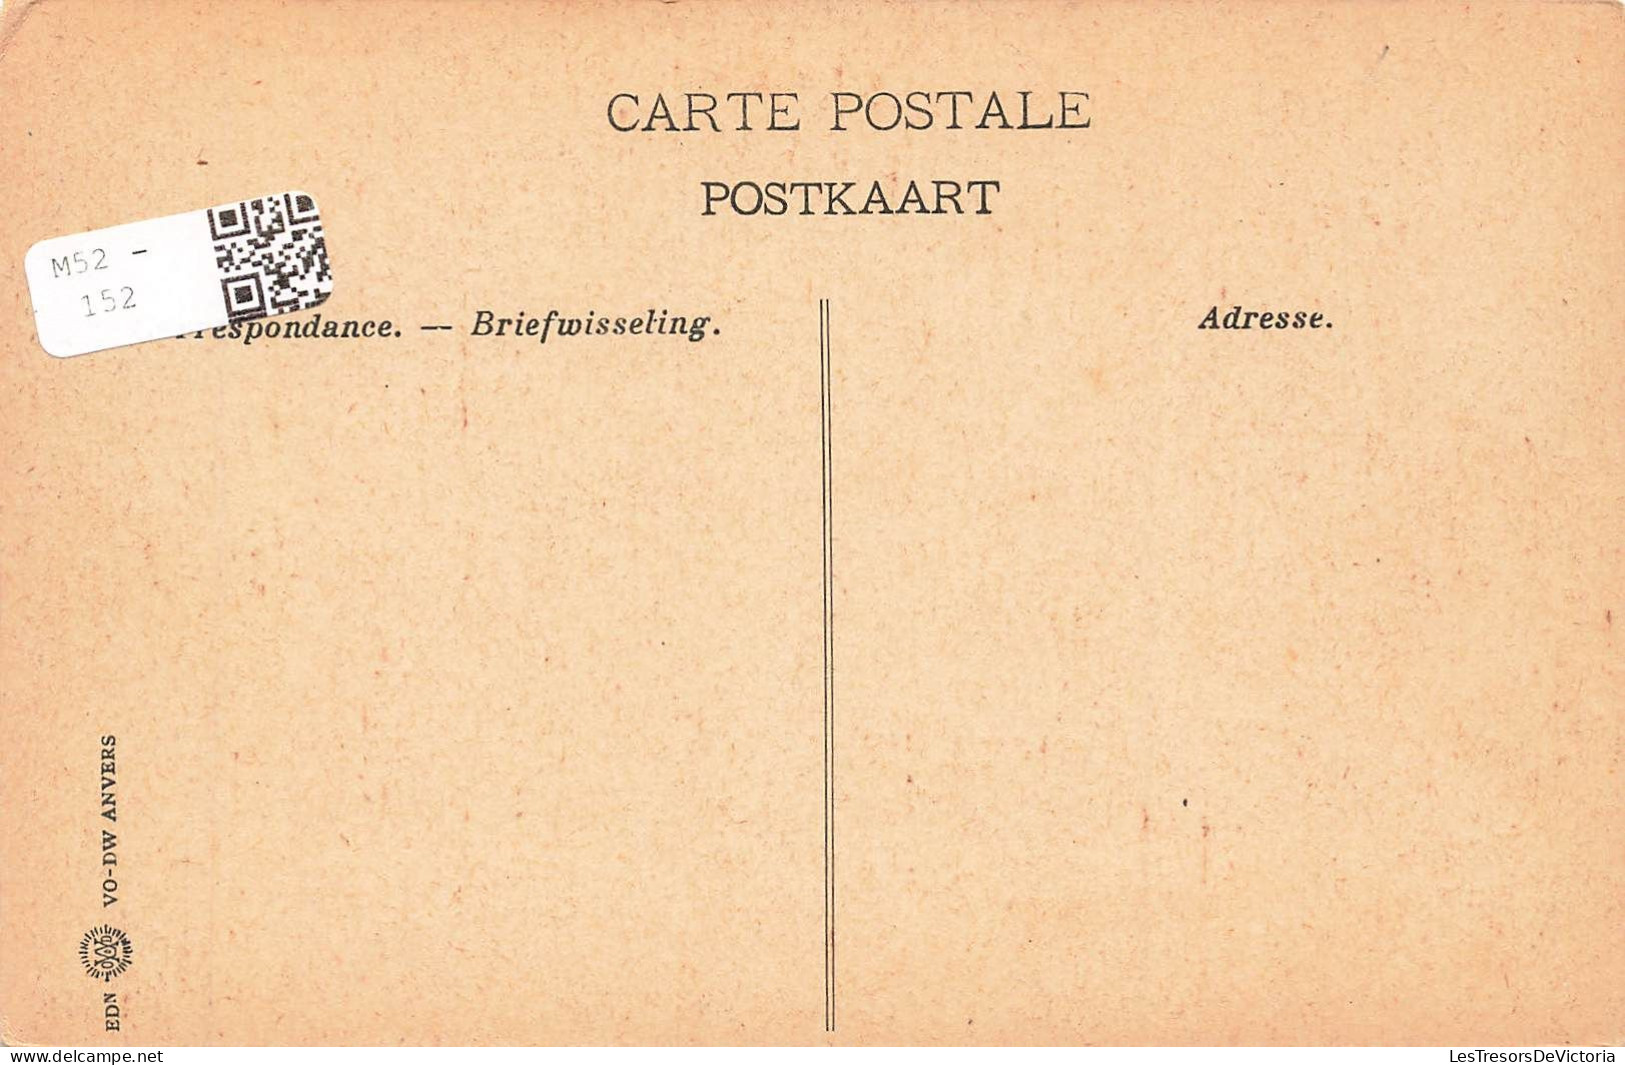 BELGIQUE - Liège - Boulevard De La Sauvenière - Carte Postale Ancienne - Liege